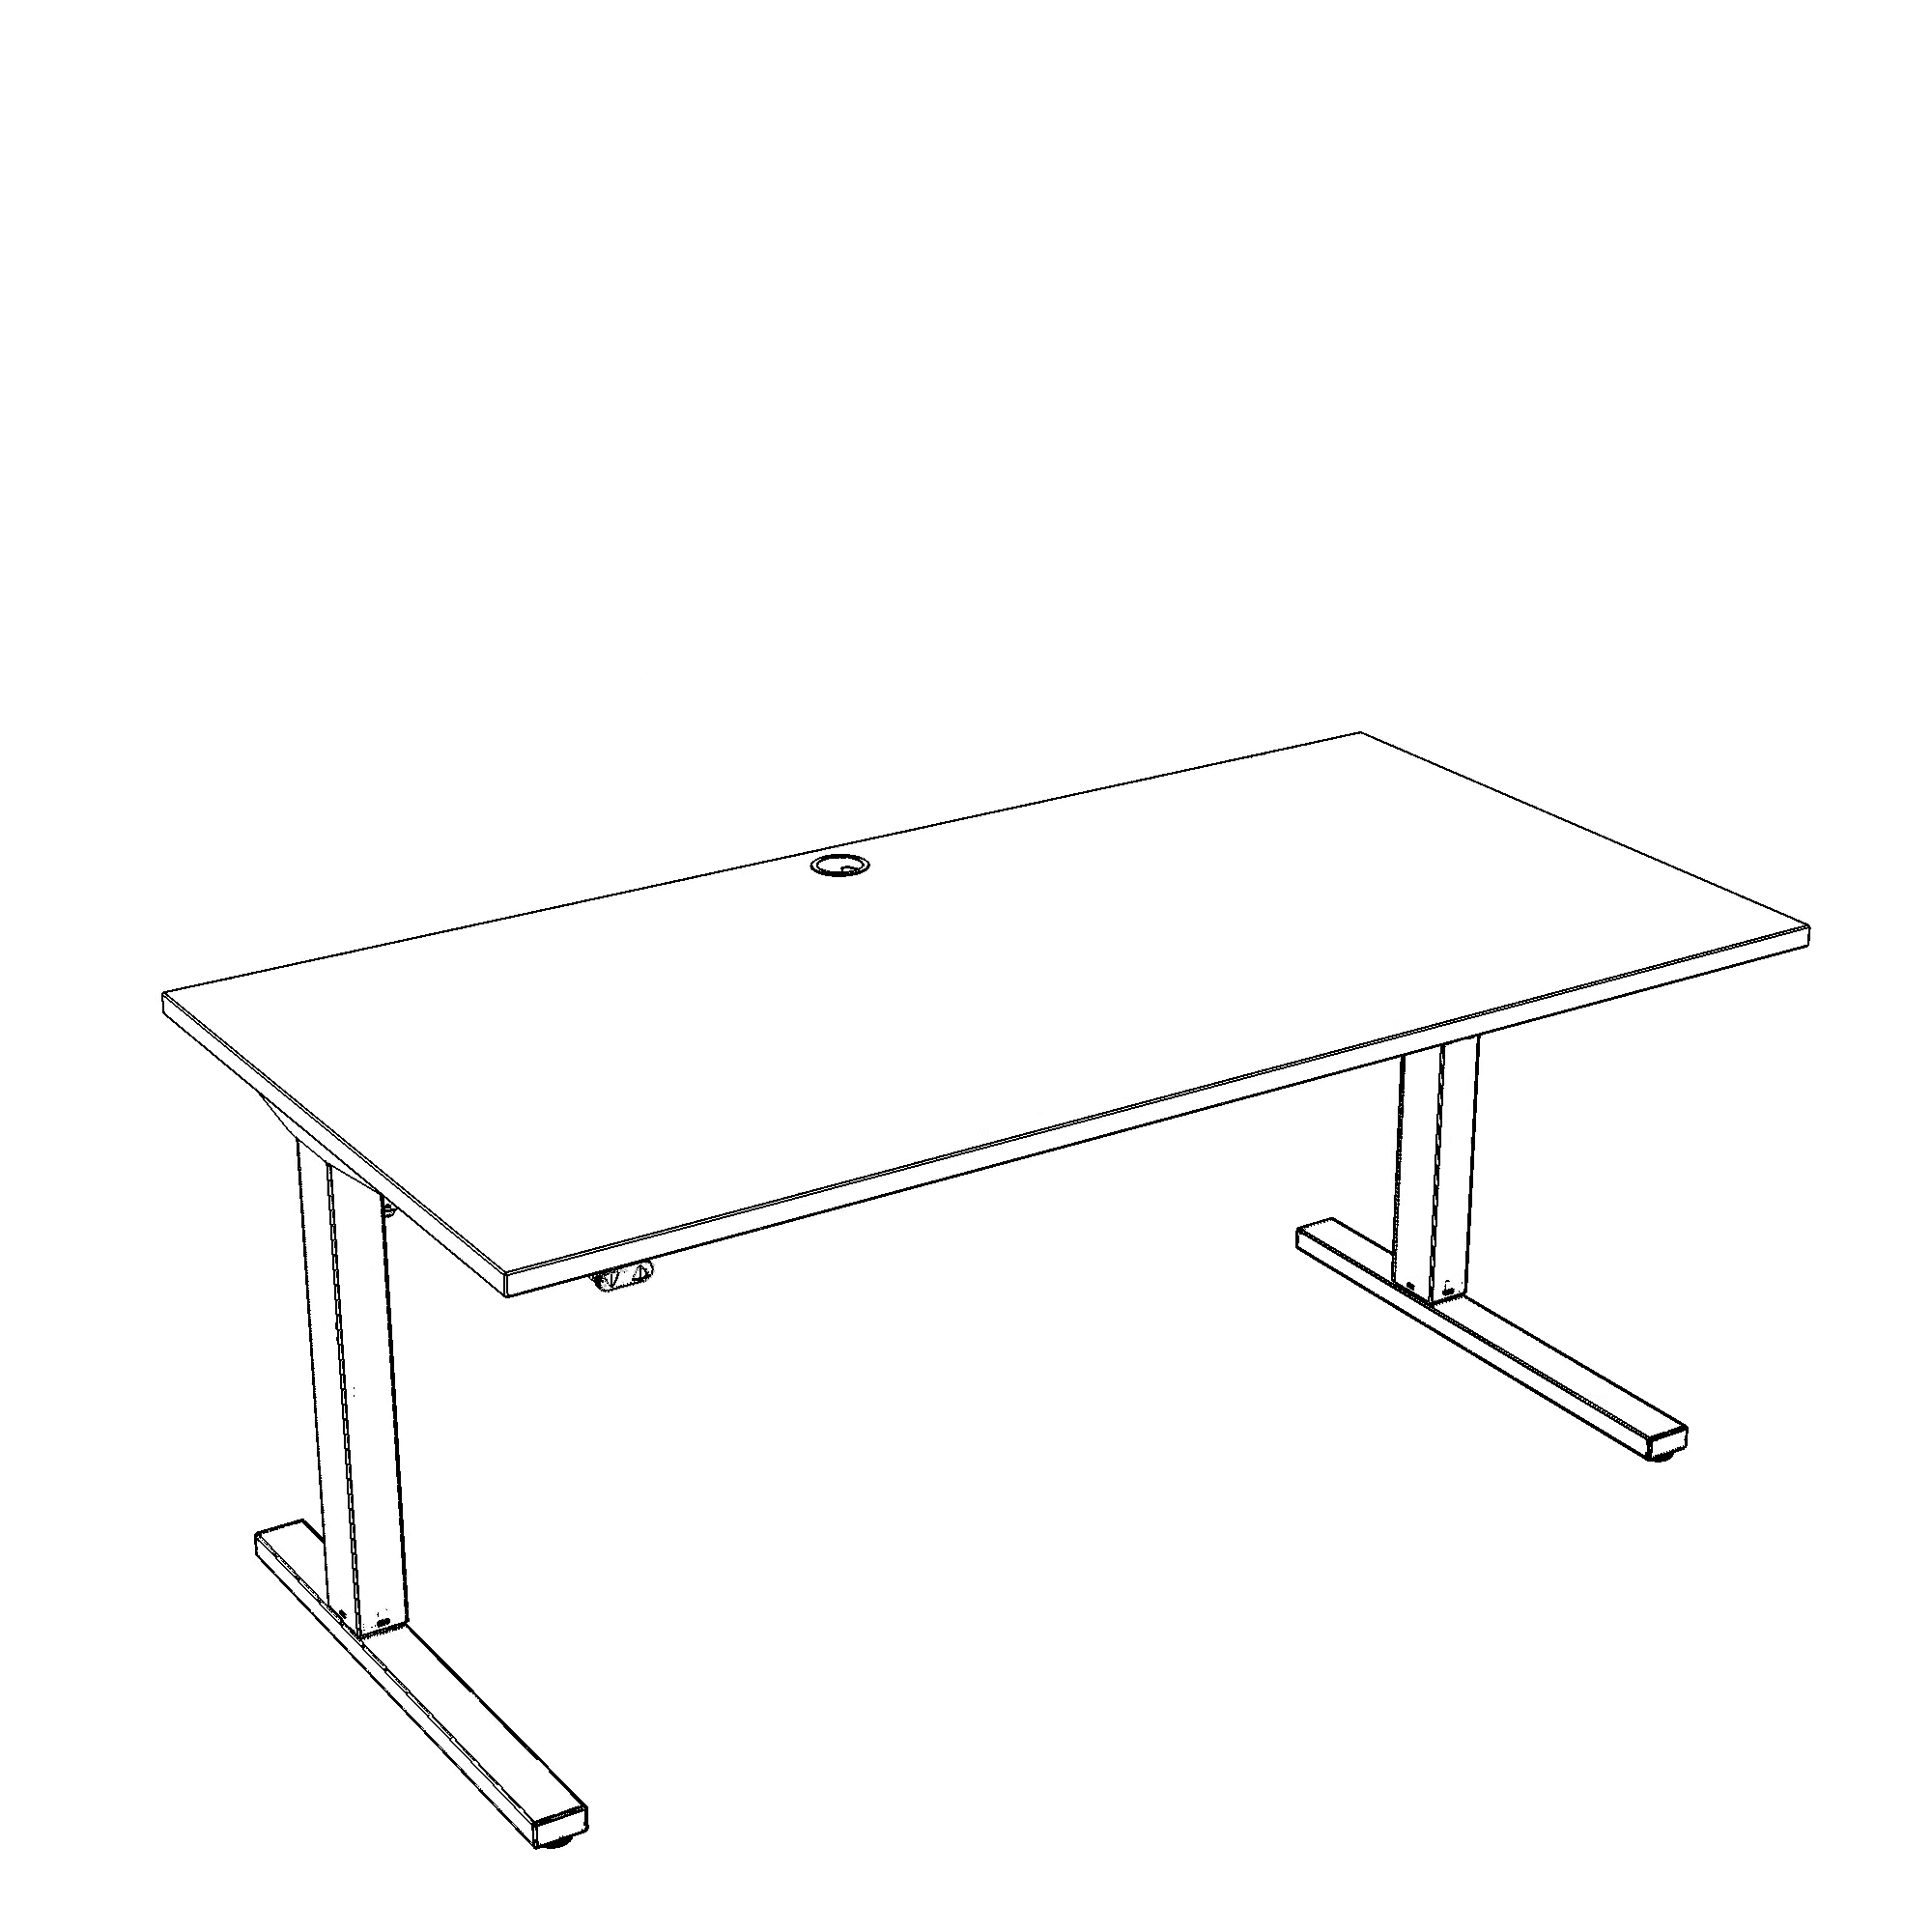 Schreibtisch steh/sitz | 180x80 cm | Weiß mit grauem Gestell